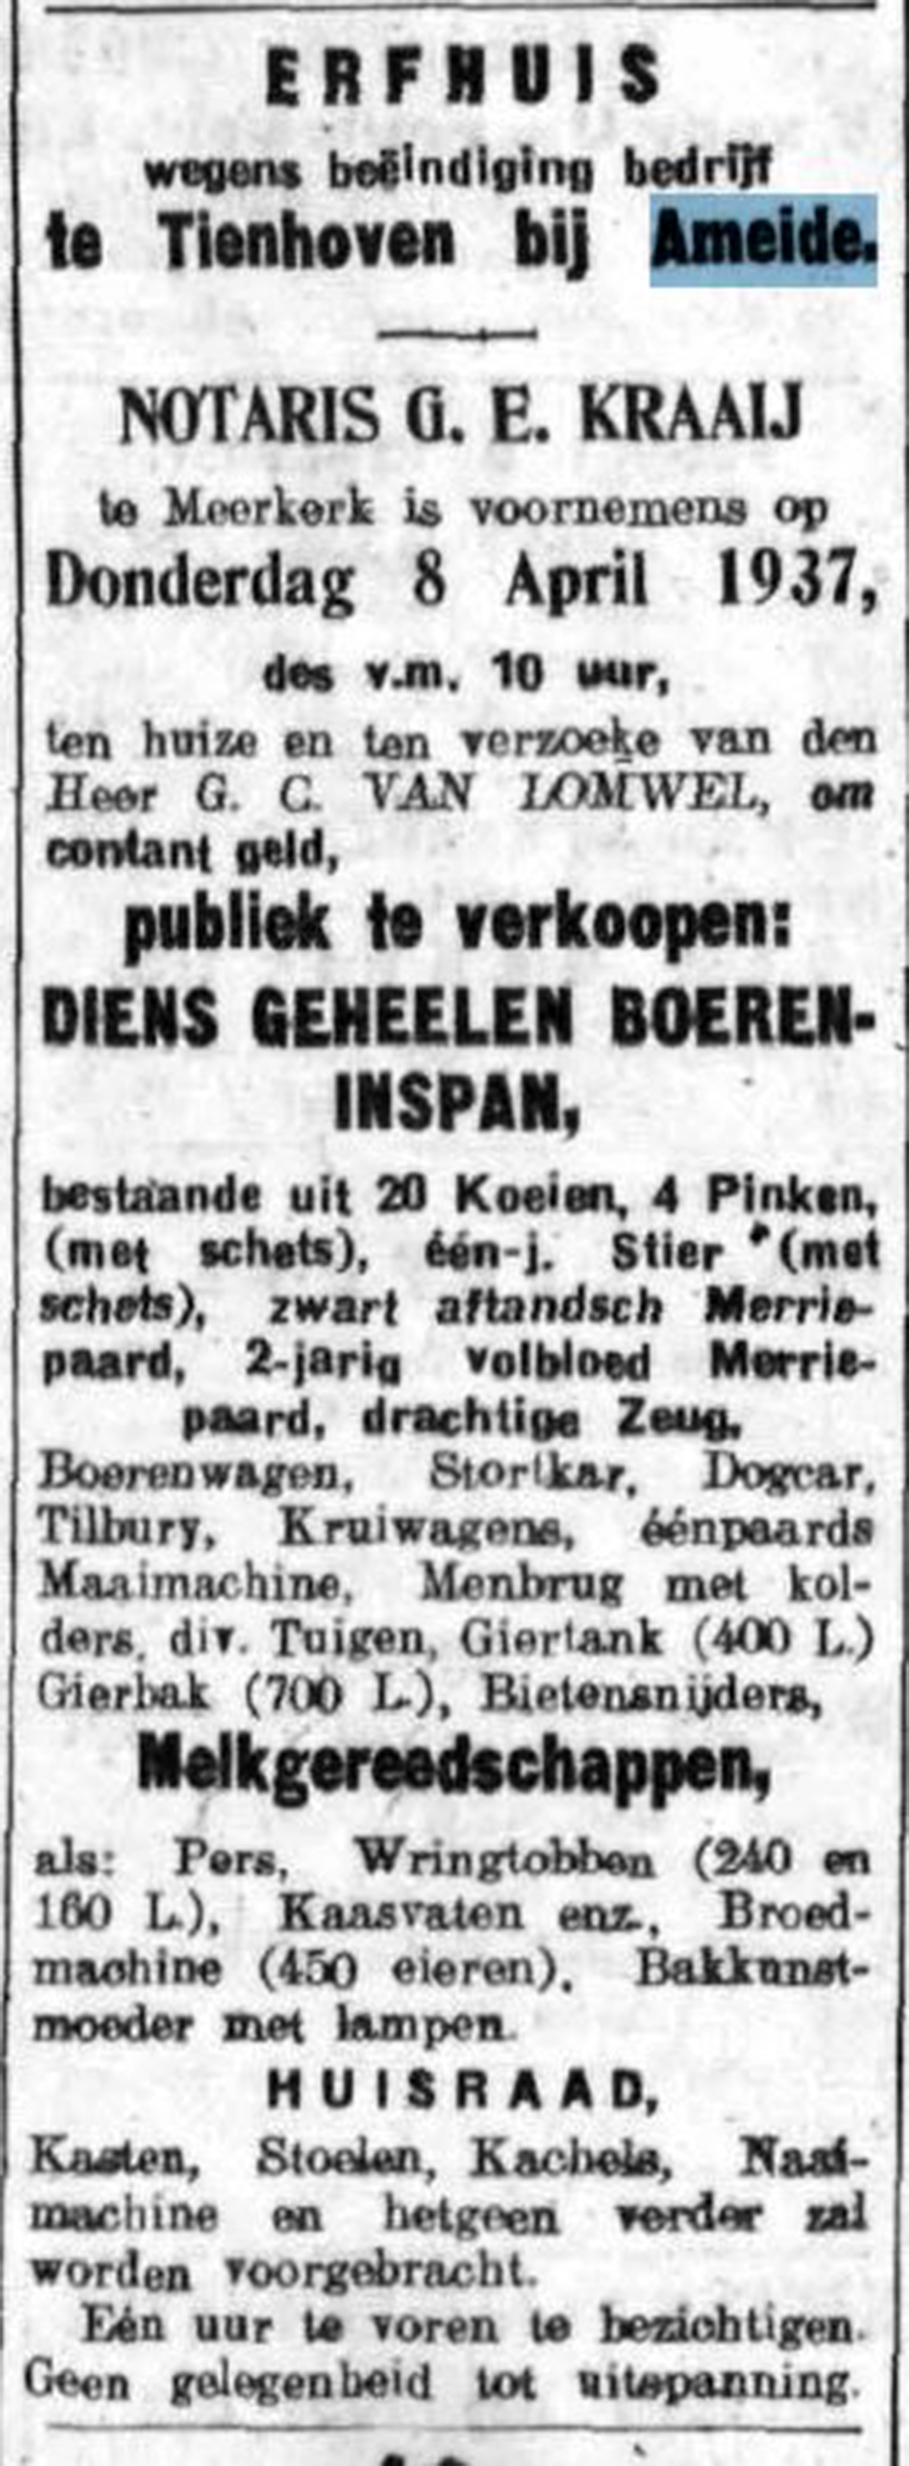 Schoonhovensche Courant 07789 1937-03-26 artikel 06